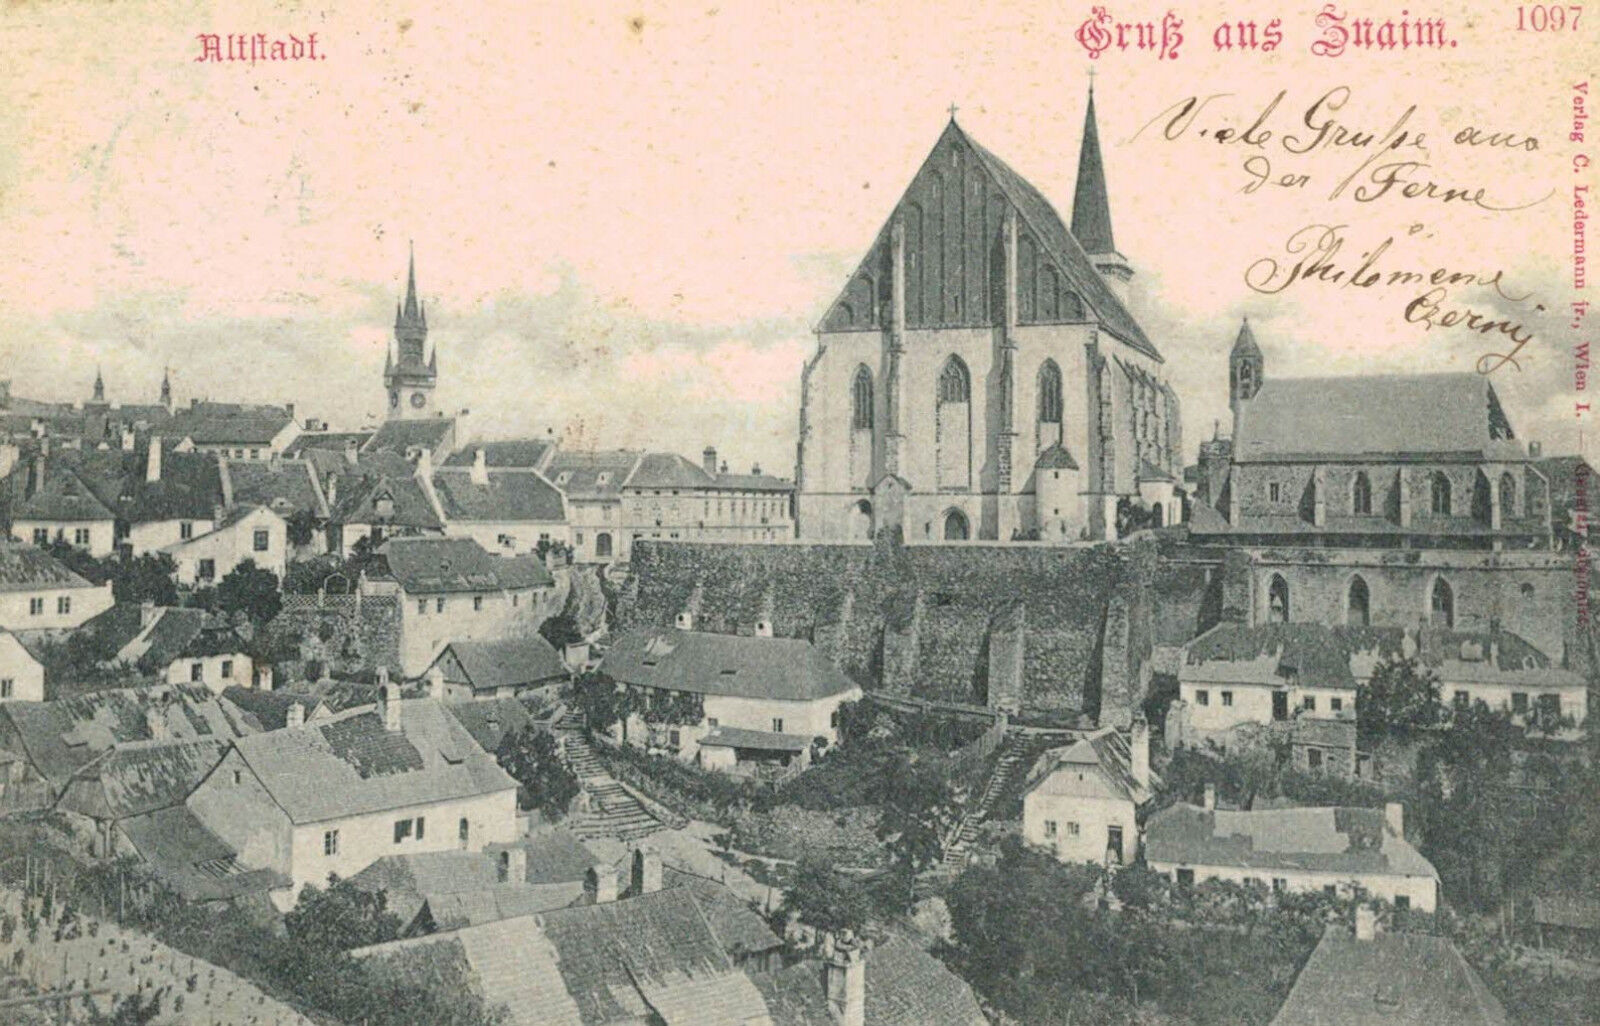 Znaim (Znojmo),Czechoslovakia,Altstadt,Moravia,Used,Austrian Stamp,Znaim,1899